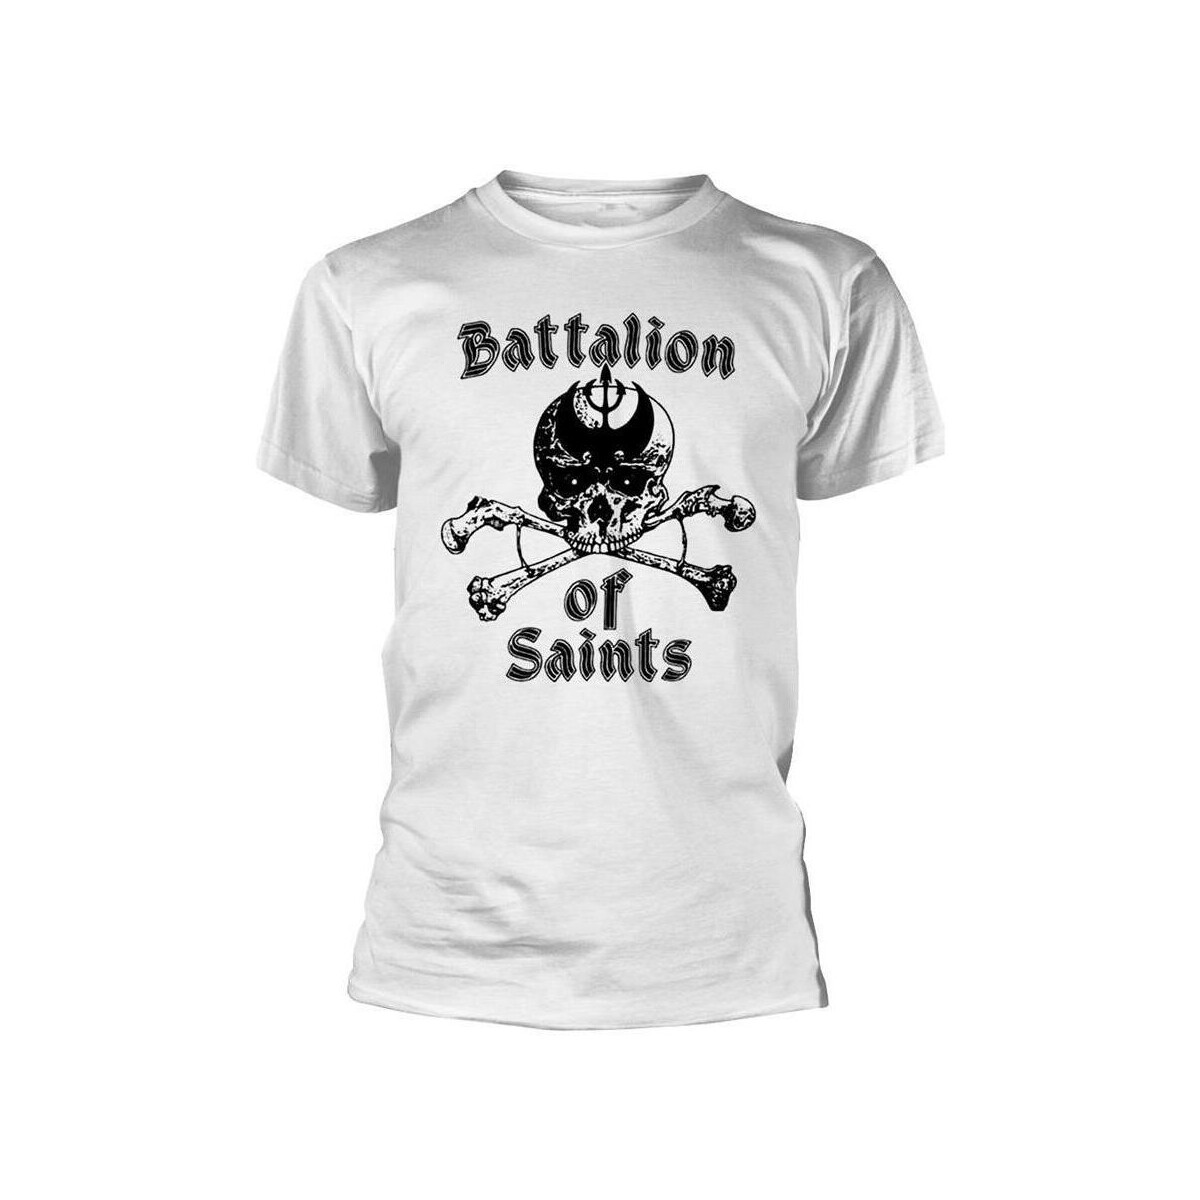 Vêtements T-shirts manches longues Battalion Of Saints PH851 Blanc